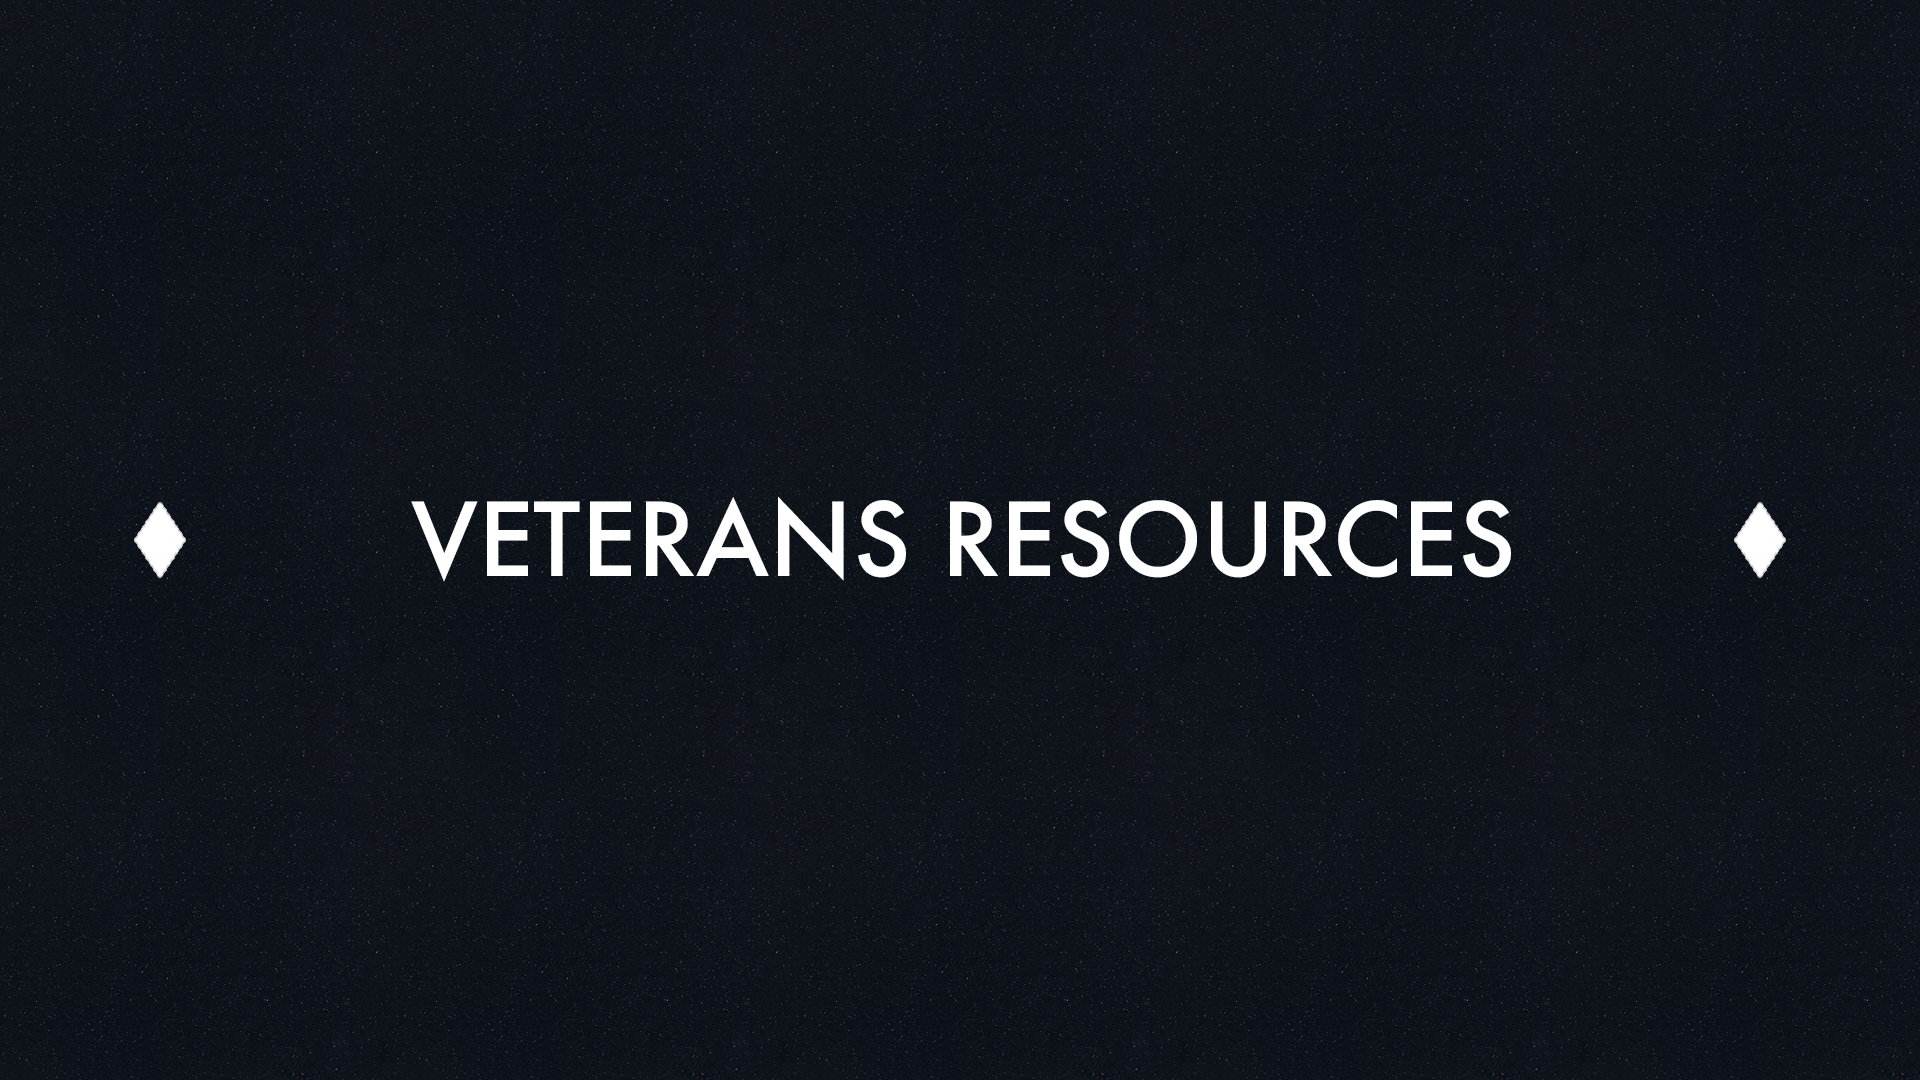 Vietnam War Veterans Resources Promo